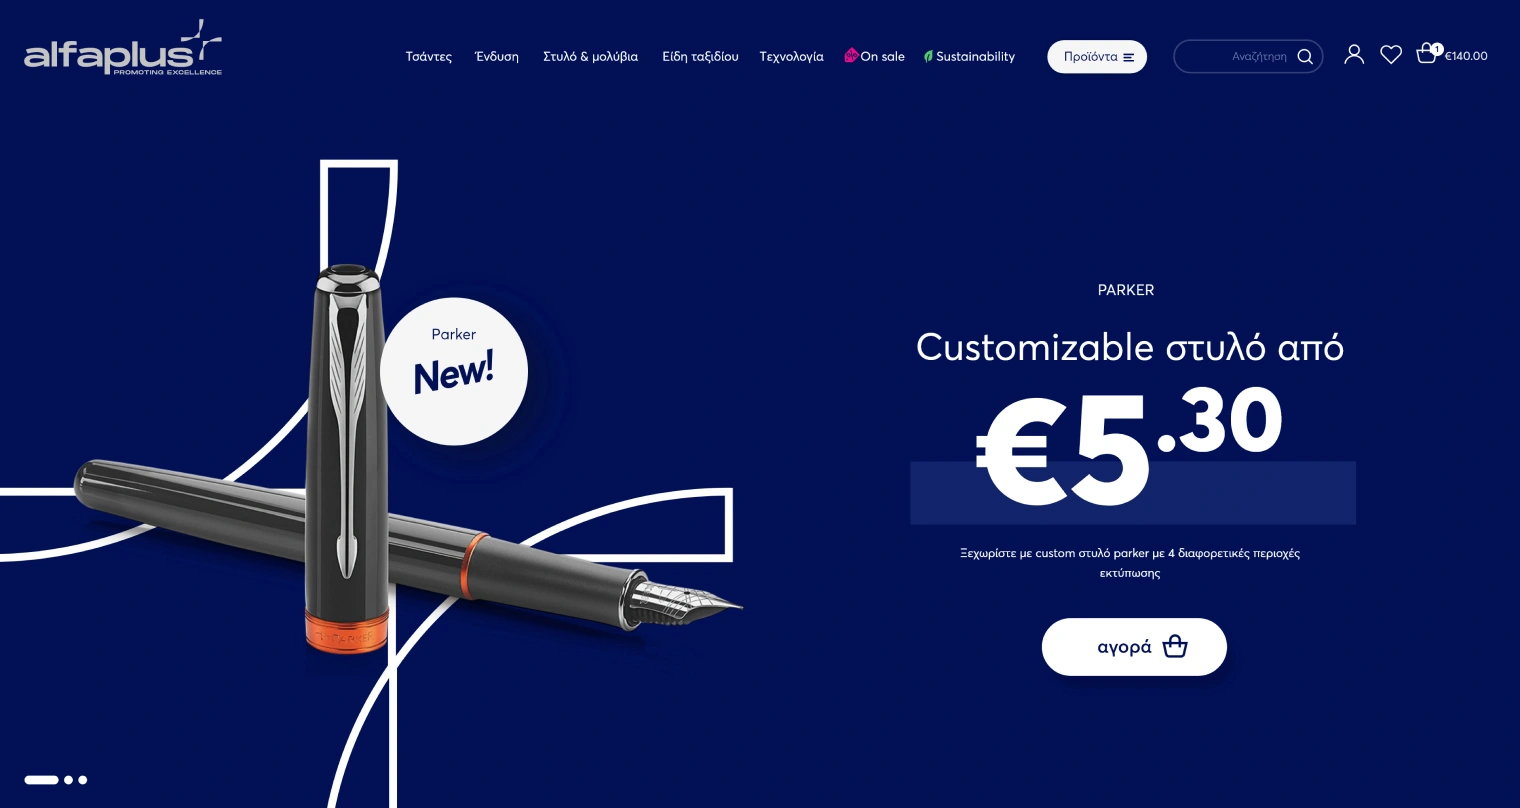 Σχεδίαση Ιστοσελίδας - Σχεδιασμός eshop - Alfaplus εμπορική Β2Β εταιρία - Artware